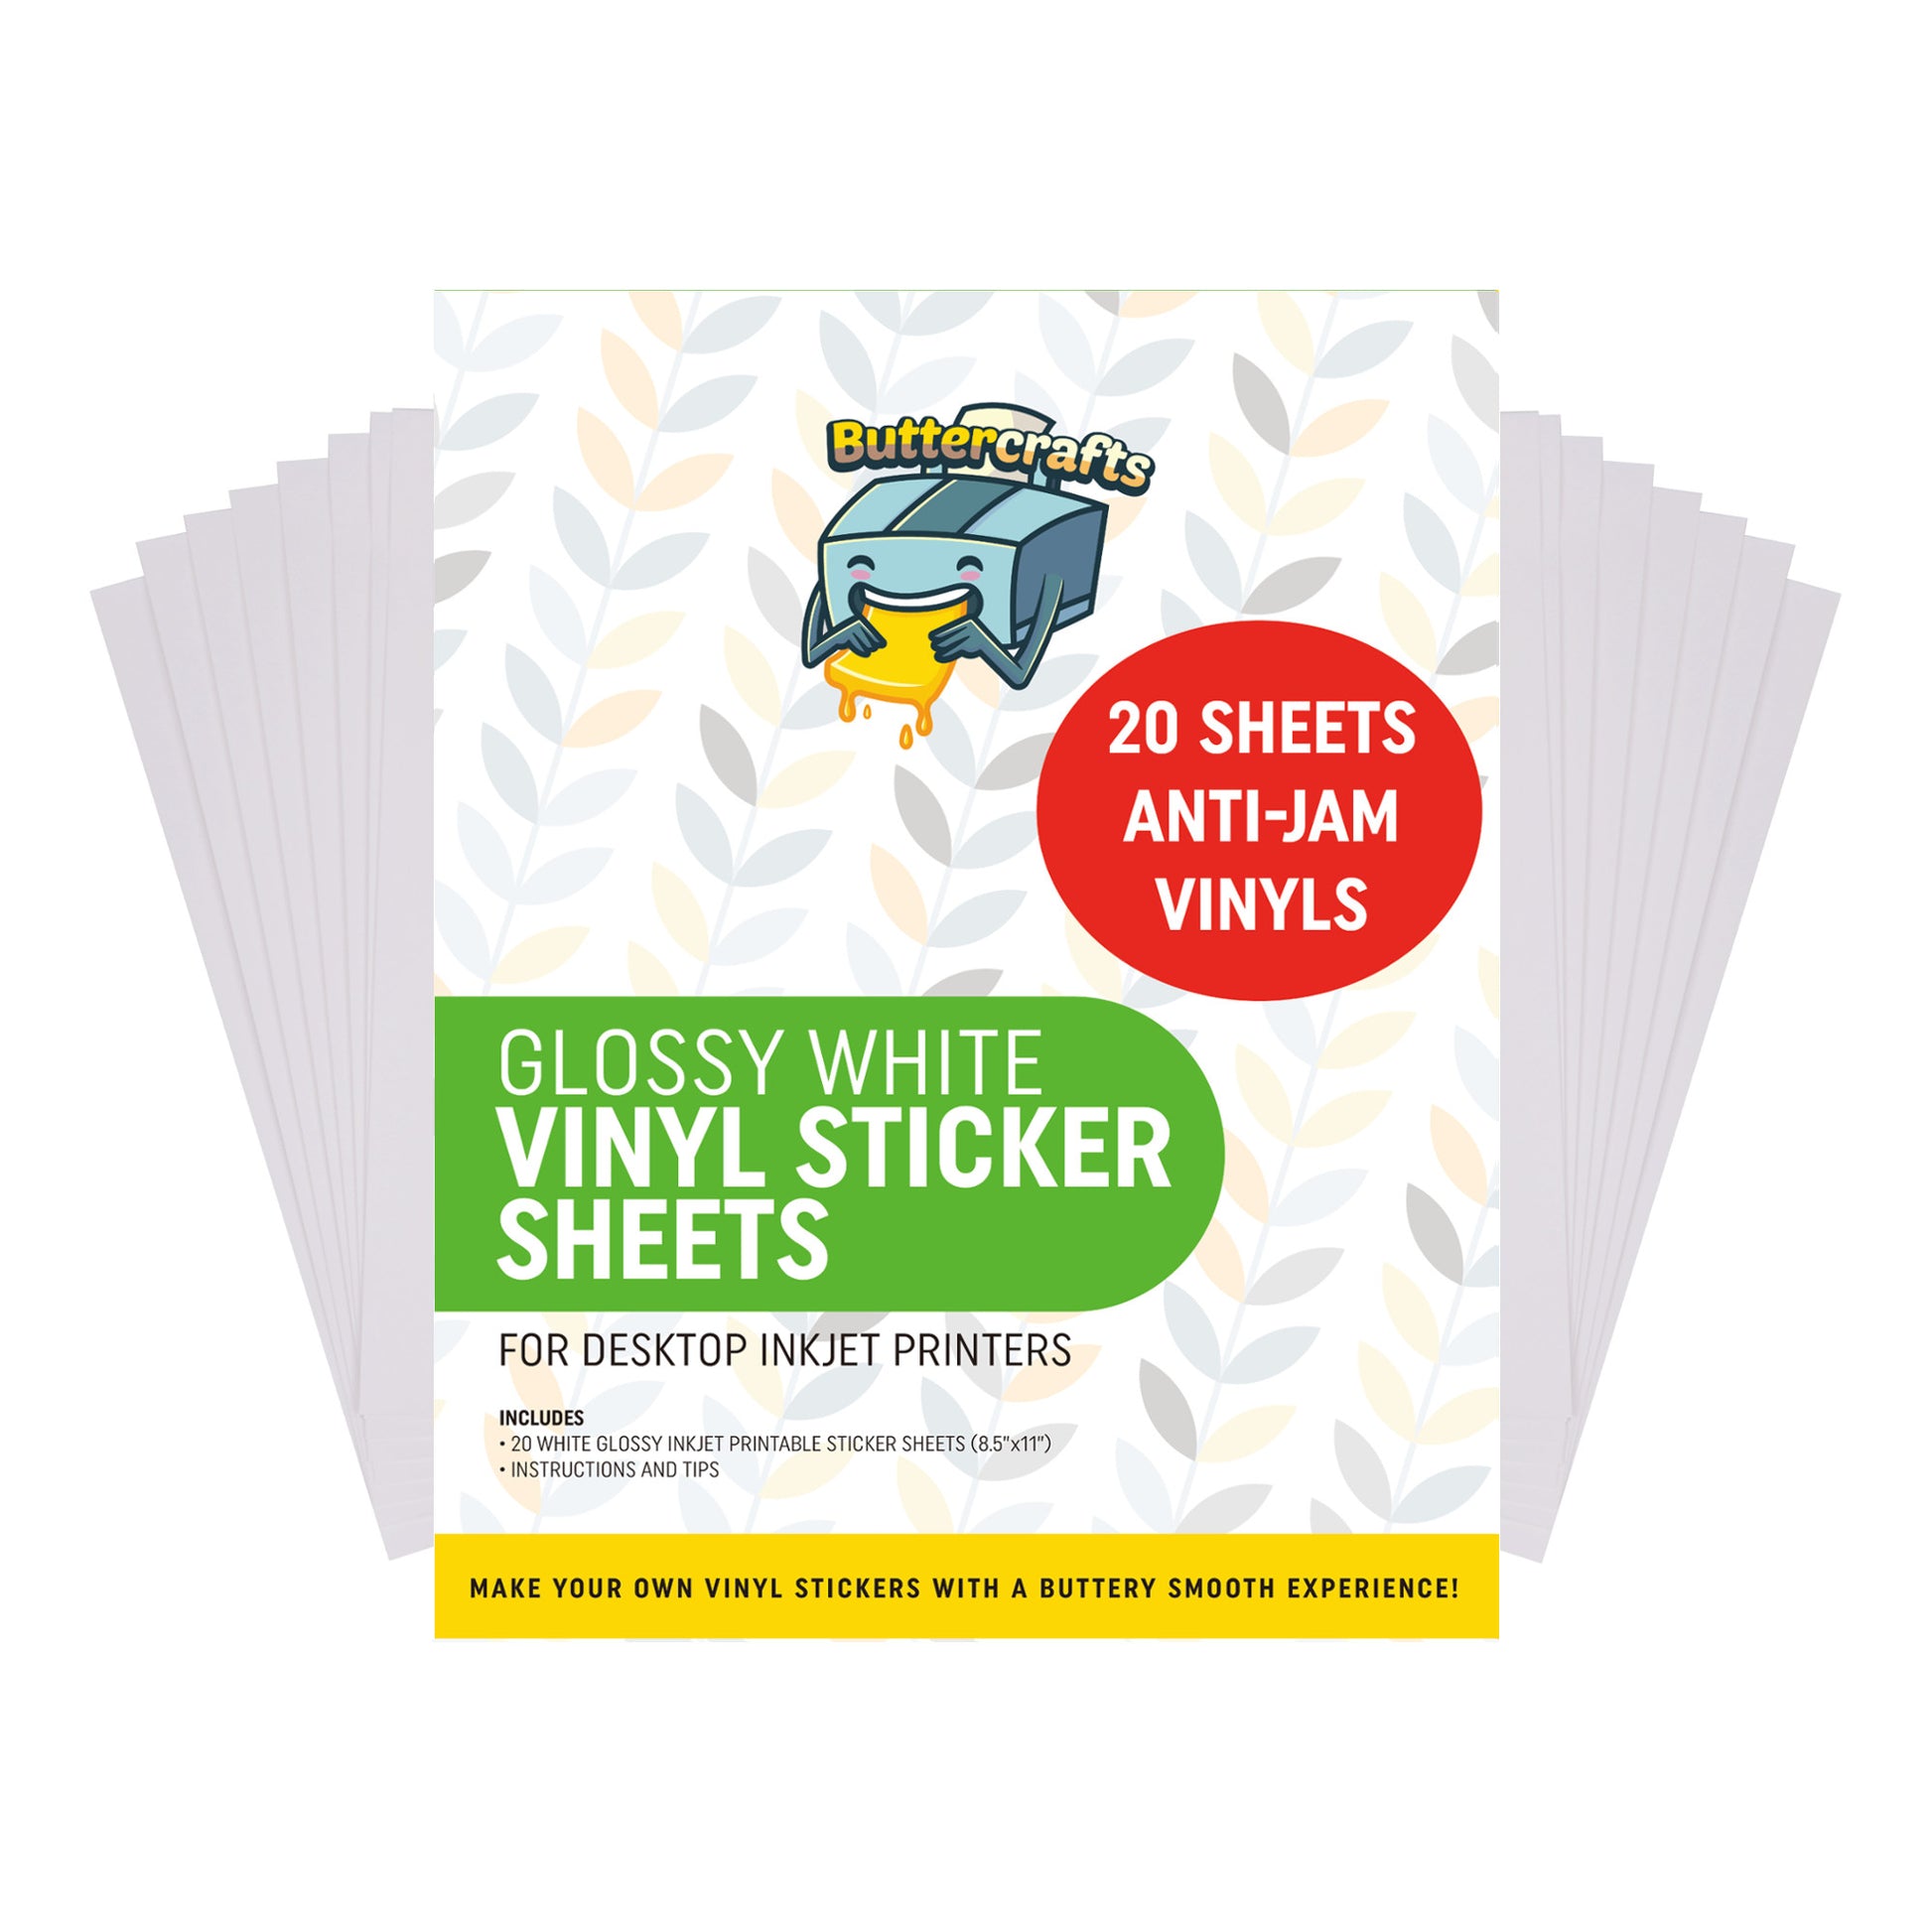 Bulk 100 Printable Vinyl Sticker Paper Glossy White Waterproof Inkjet  Printer